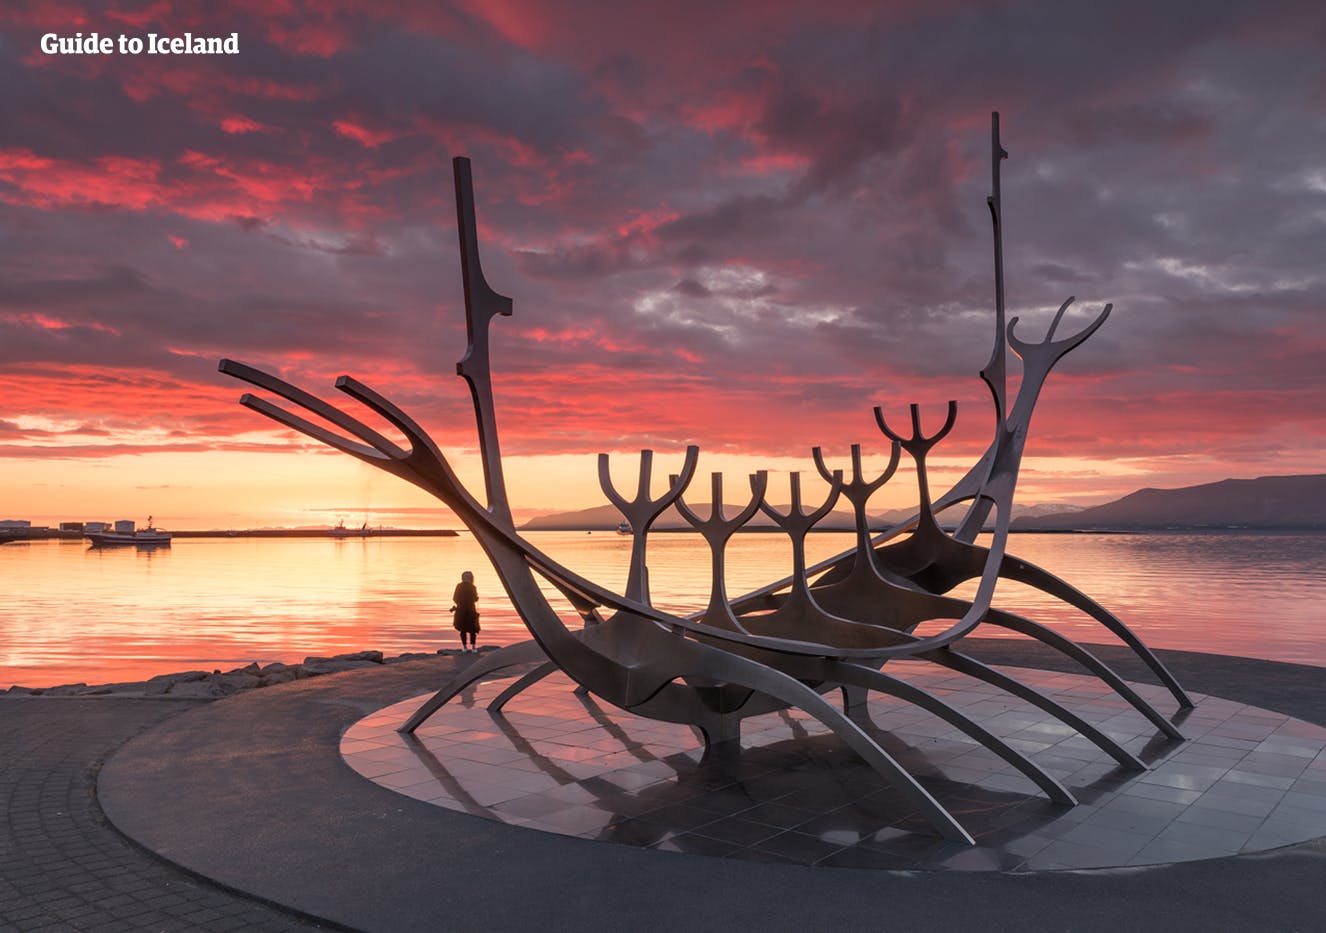 De Sun Voyager in Reykjavik zou IJslands avontuurlijke geest voorstellen.